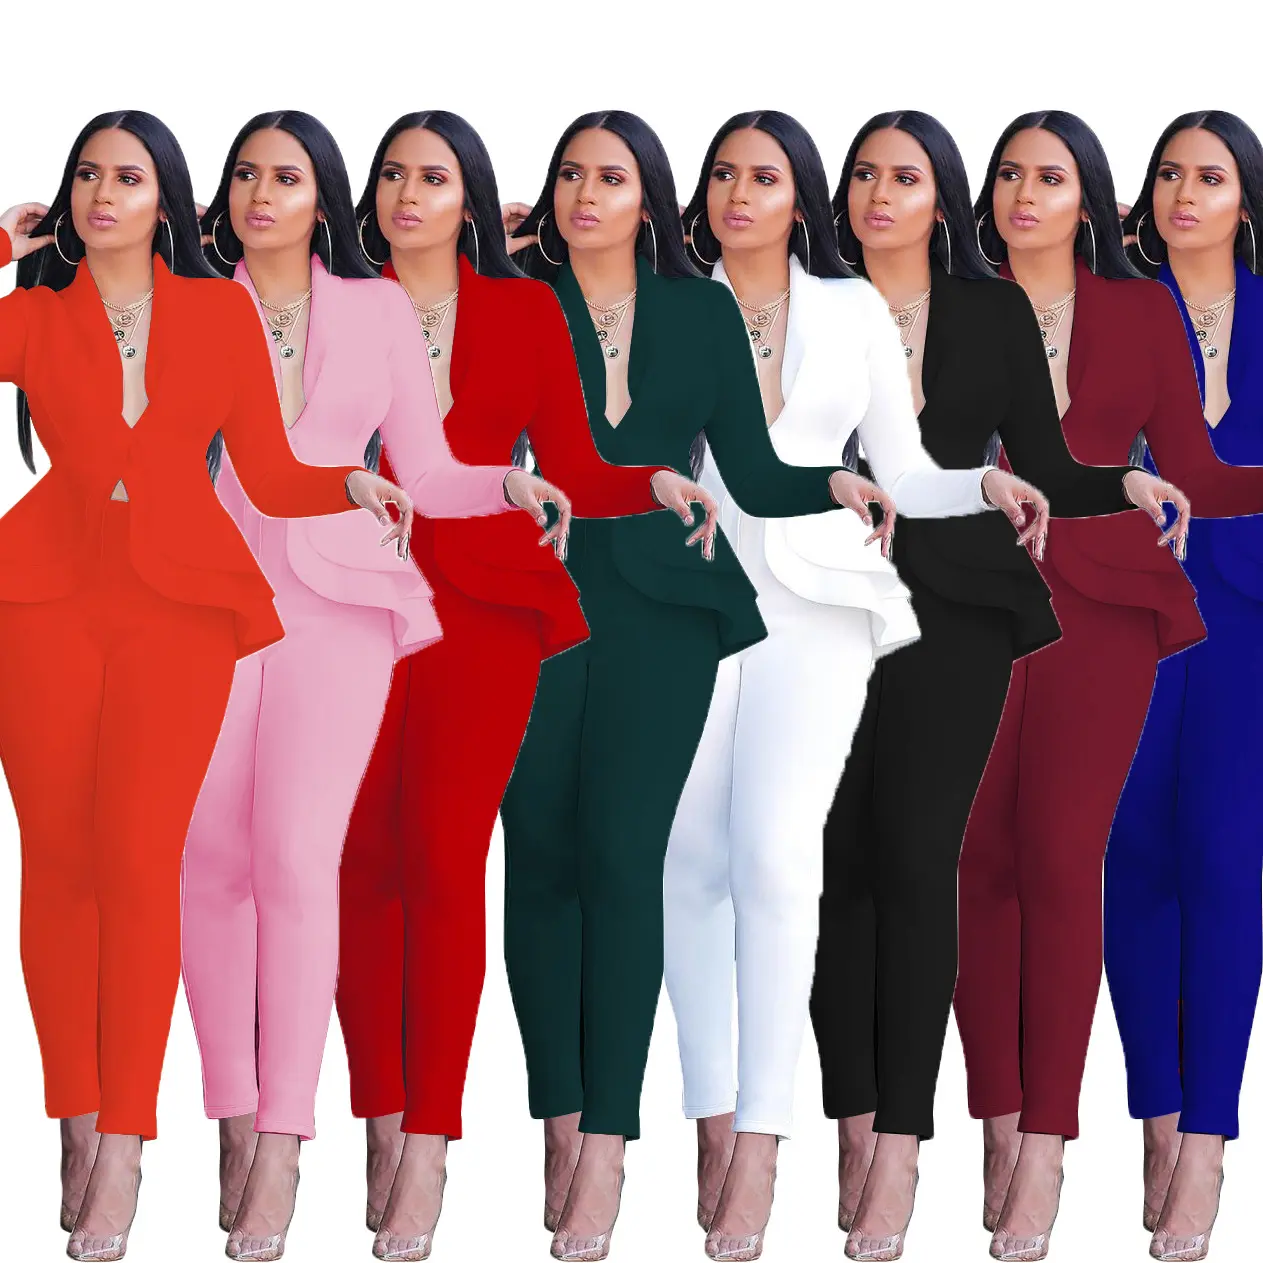 Nova Moda de Duas Peças Set Mulheres ternos de Negócio Ternos Formais Terno Das Senhoras Com Blazer e Calças